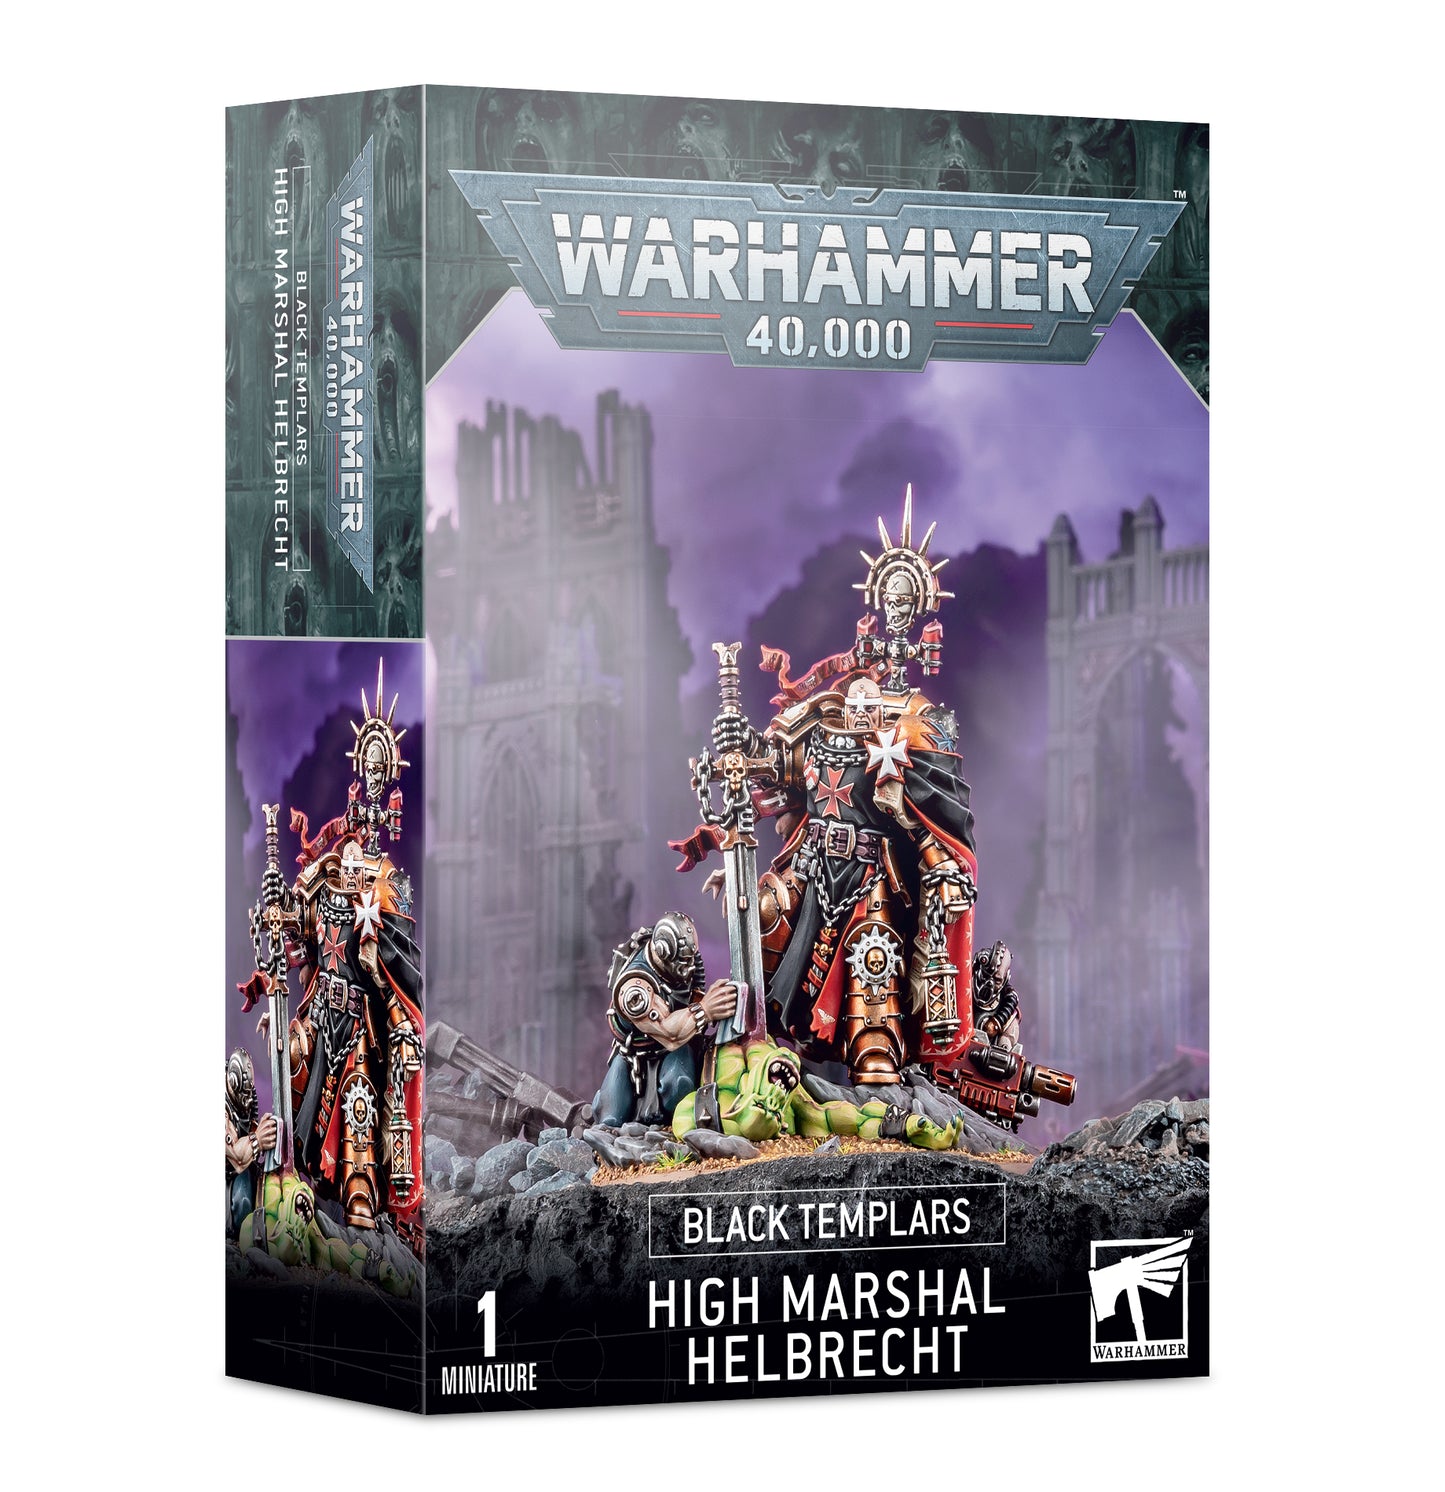 Black Templars High Marshal Helbrecht, Warhammer 40,000